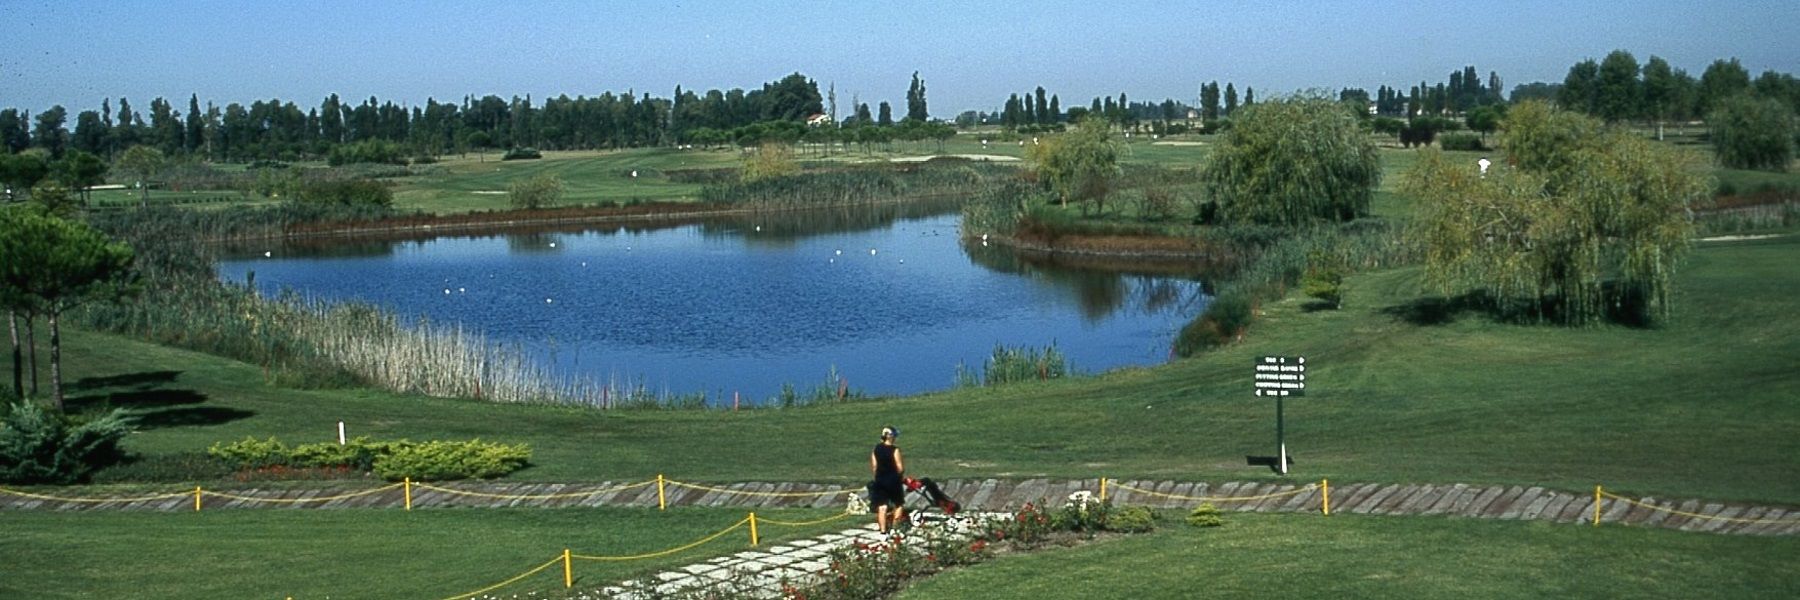 Adriatic Golf Club Cervia - Termine im April